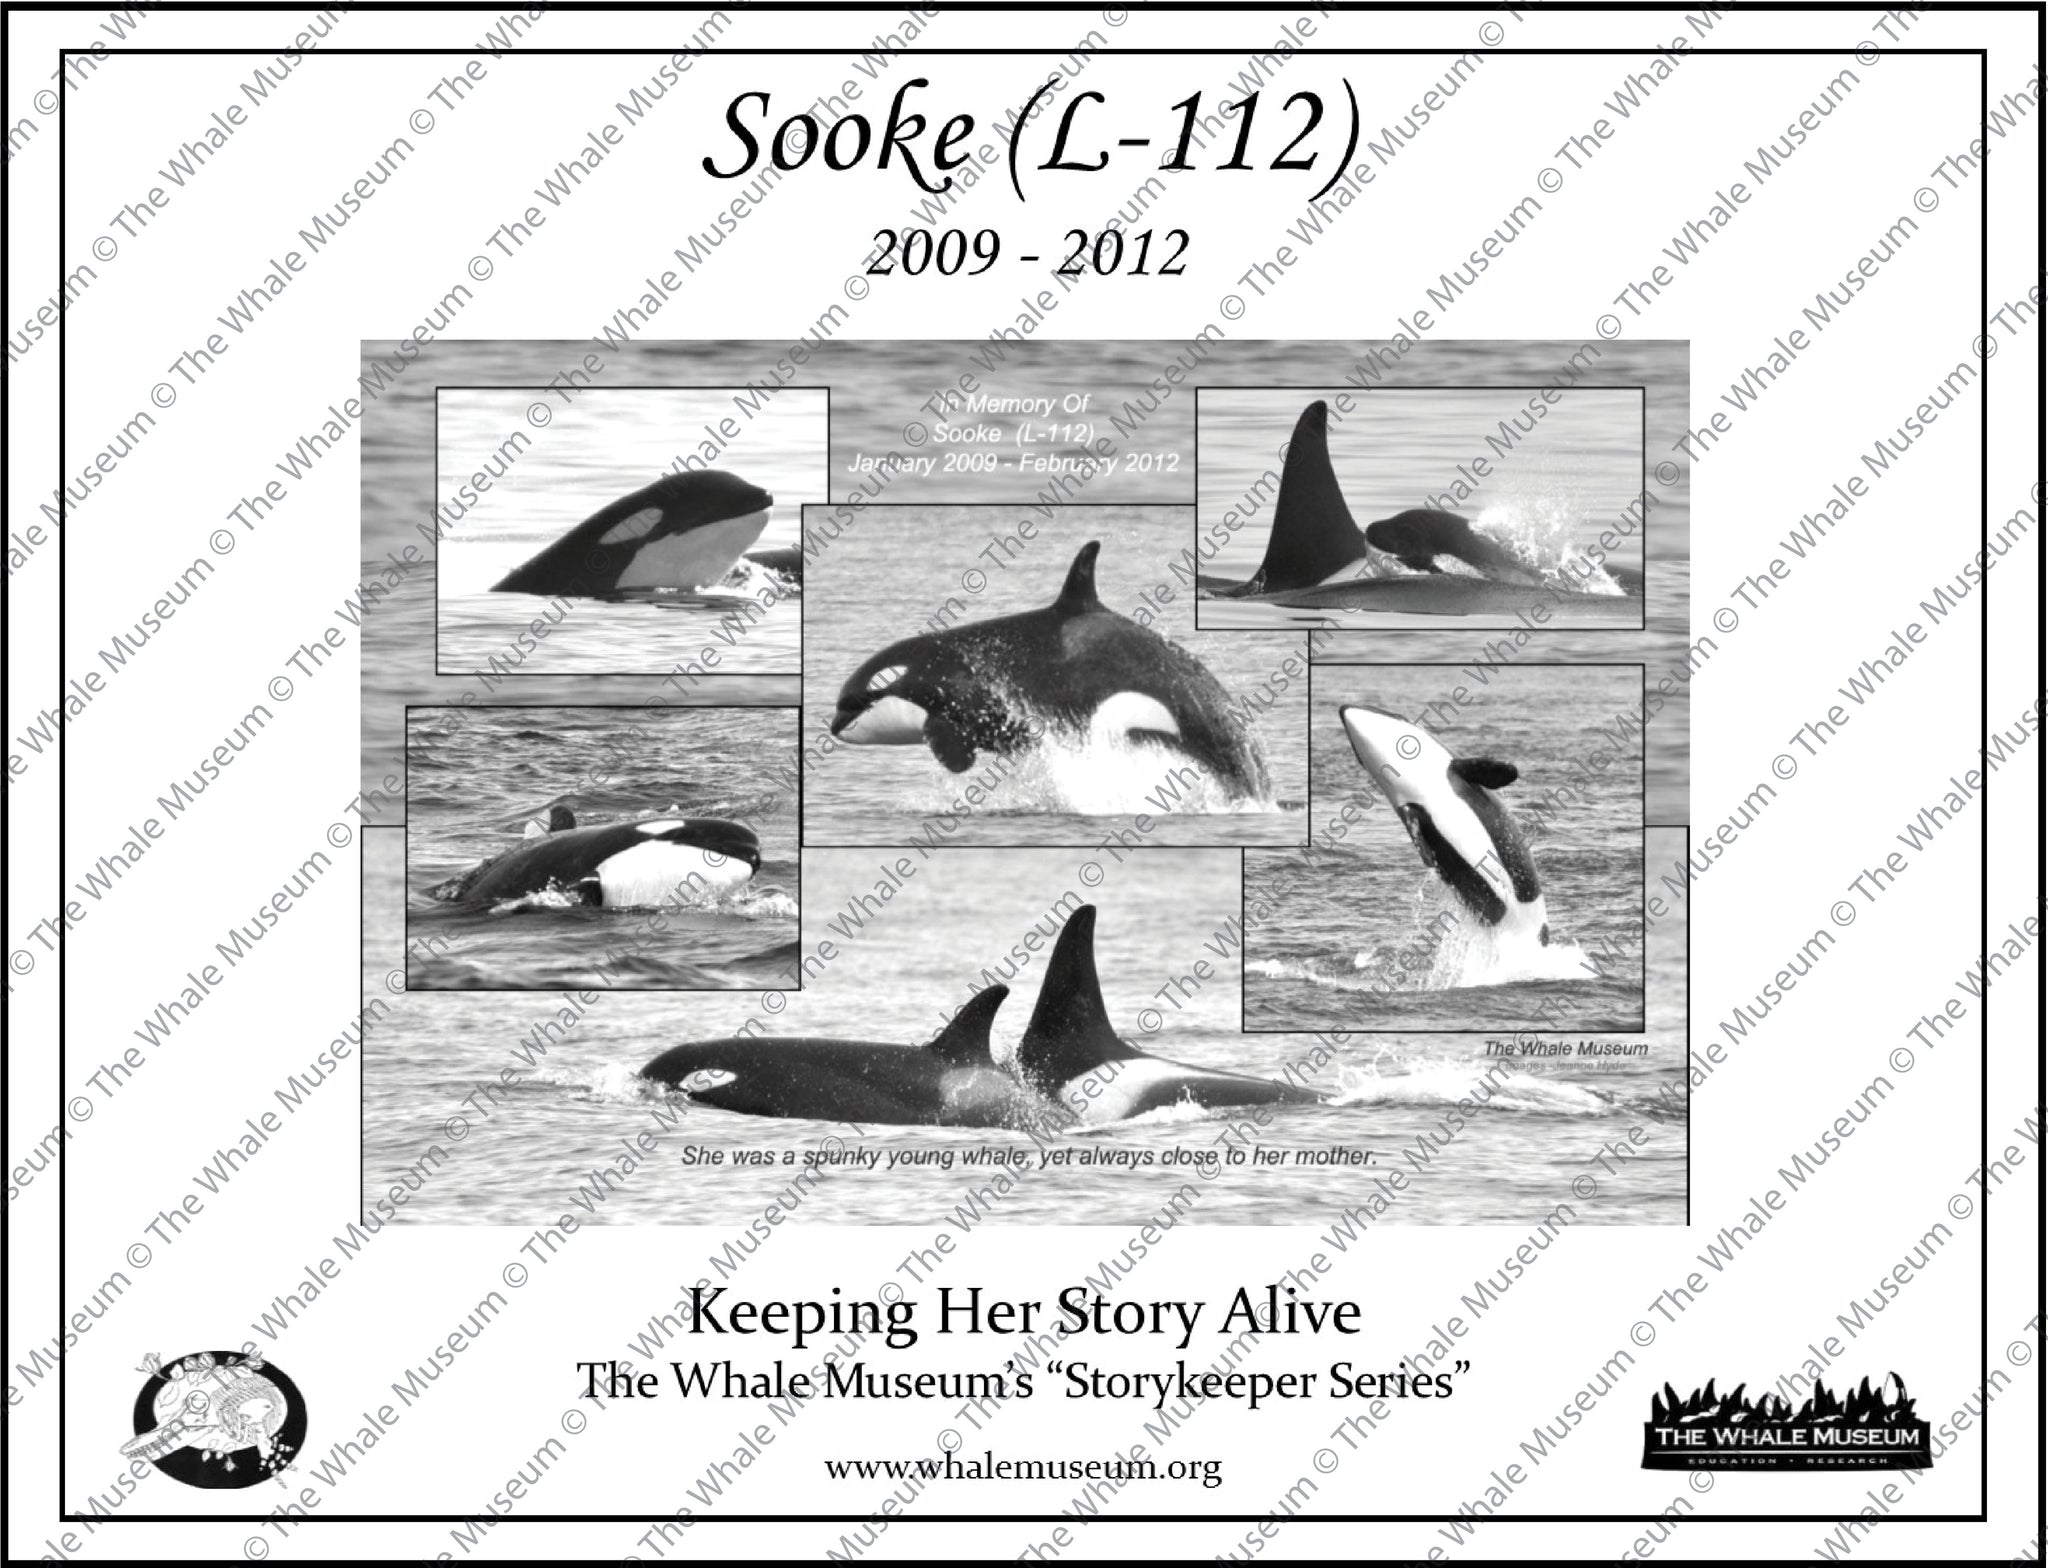 Sooke (L-112) Storykeeper